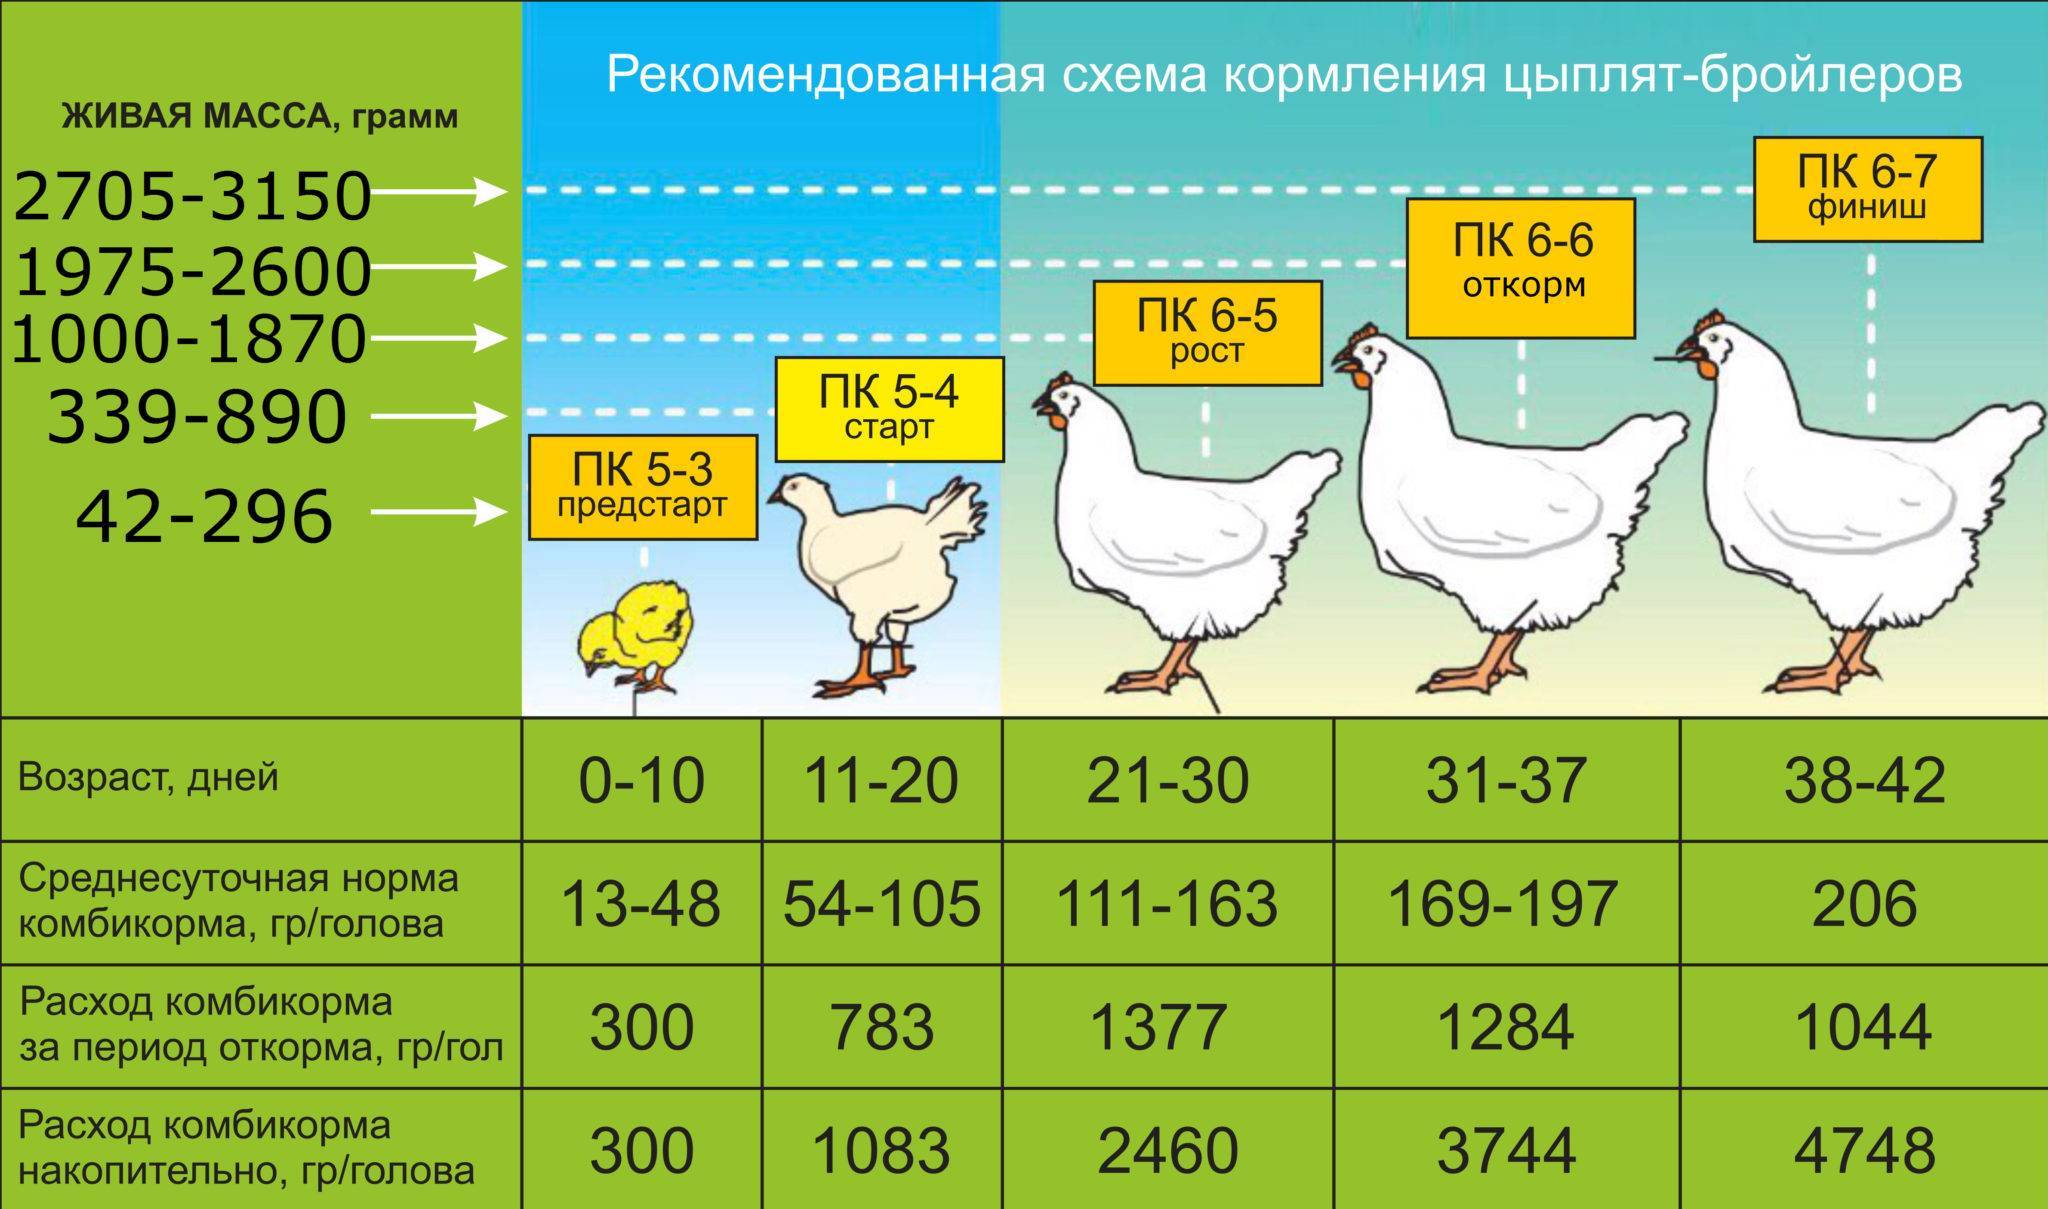 Выращивание бройлеров в домашних условиях: особенности содержания, ухода и кормления цыплят разного возраста